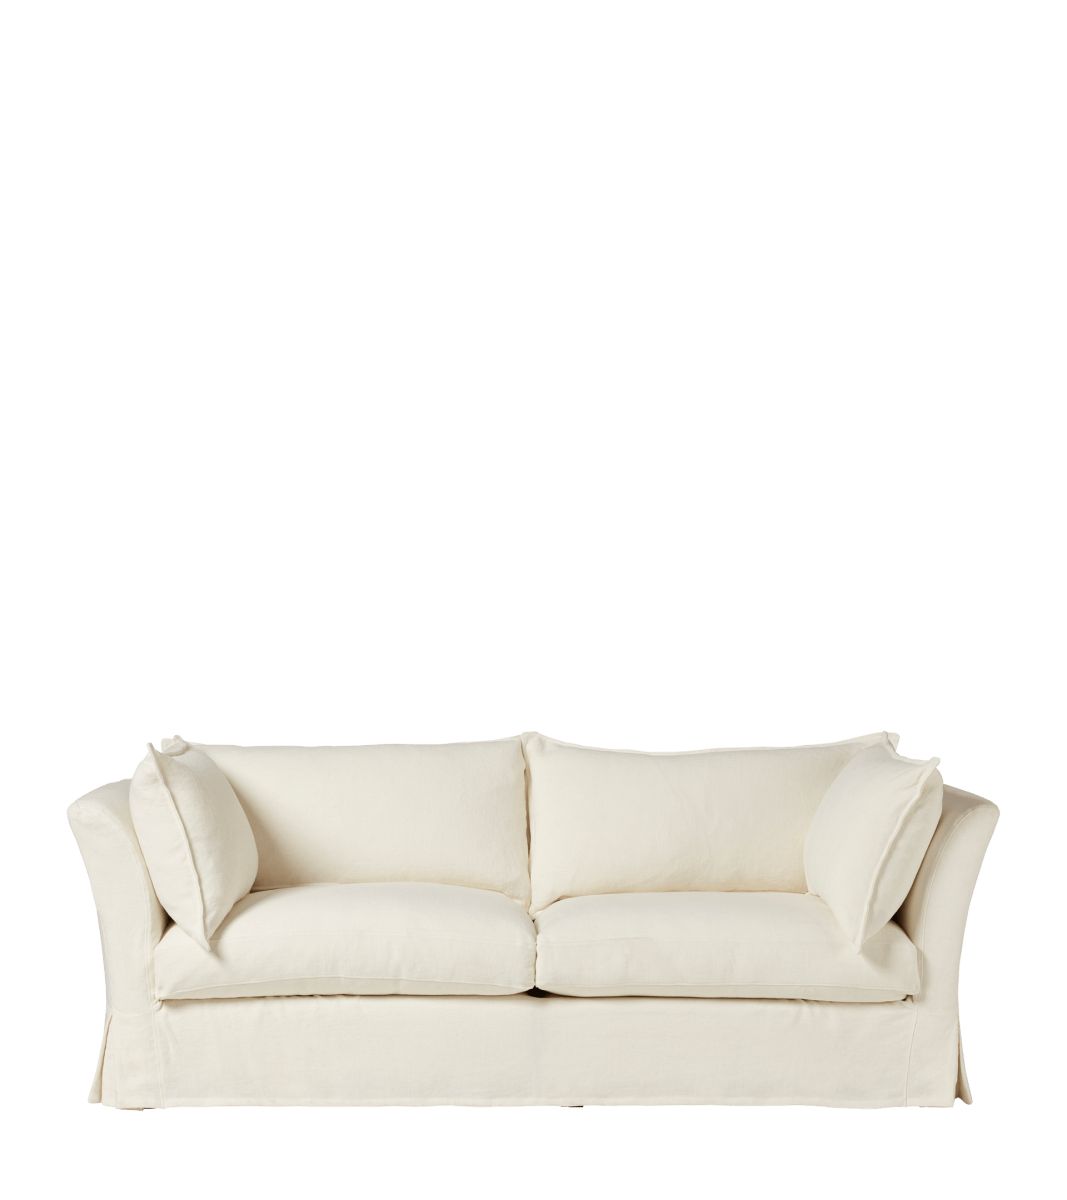 Avitus 3-Seater Sofa - Off White Linen | OKA US